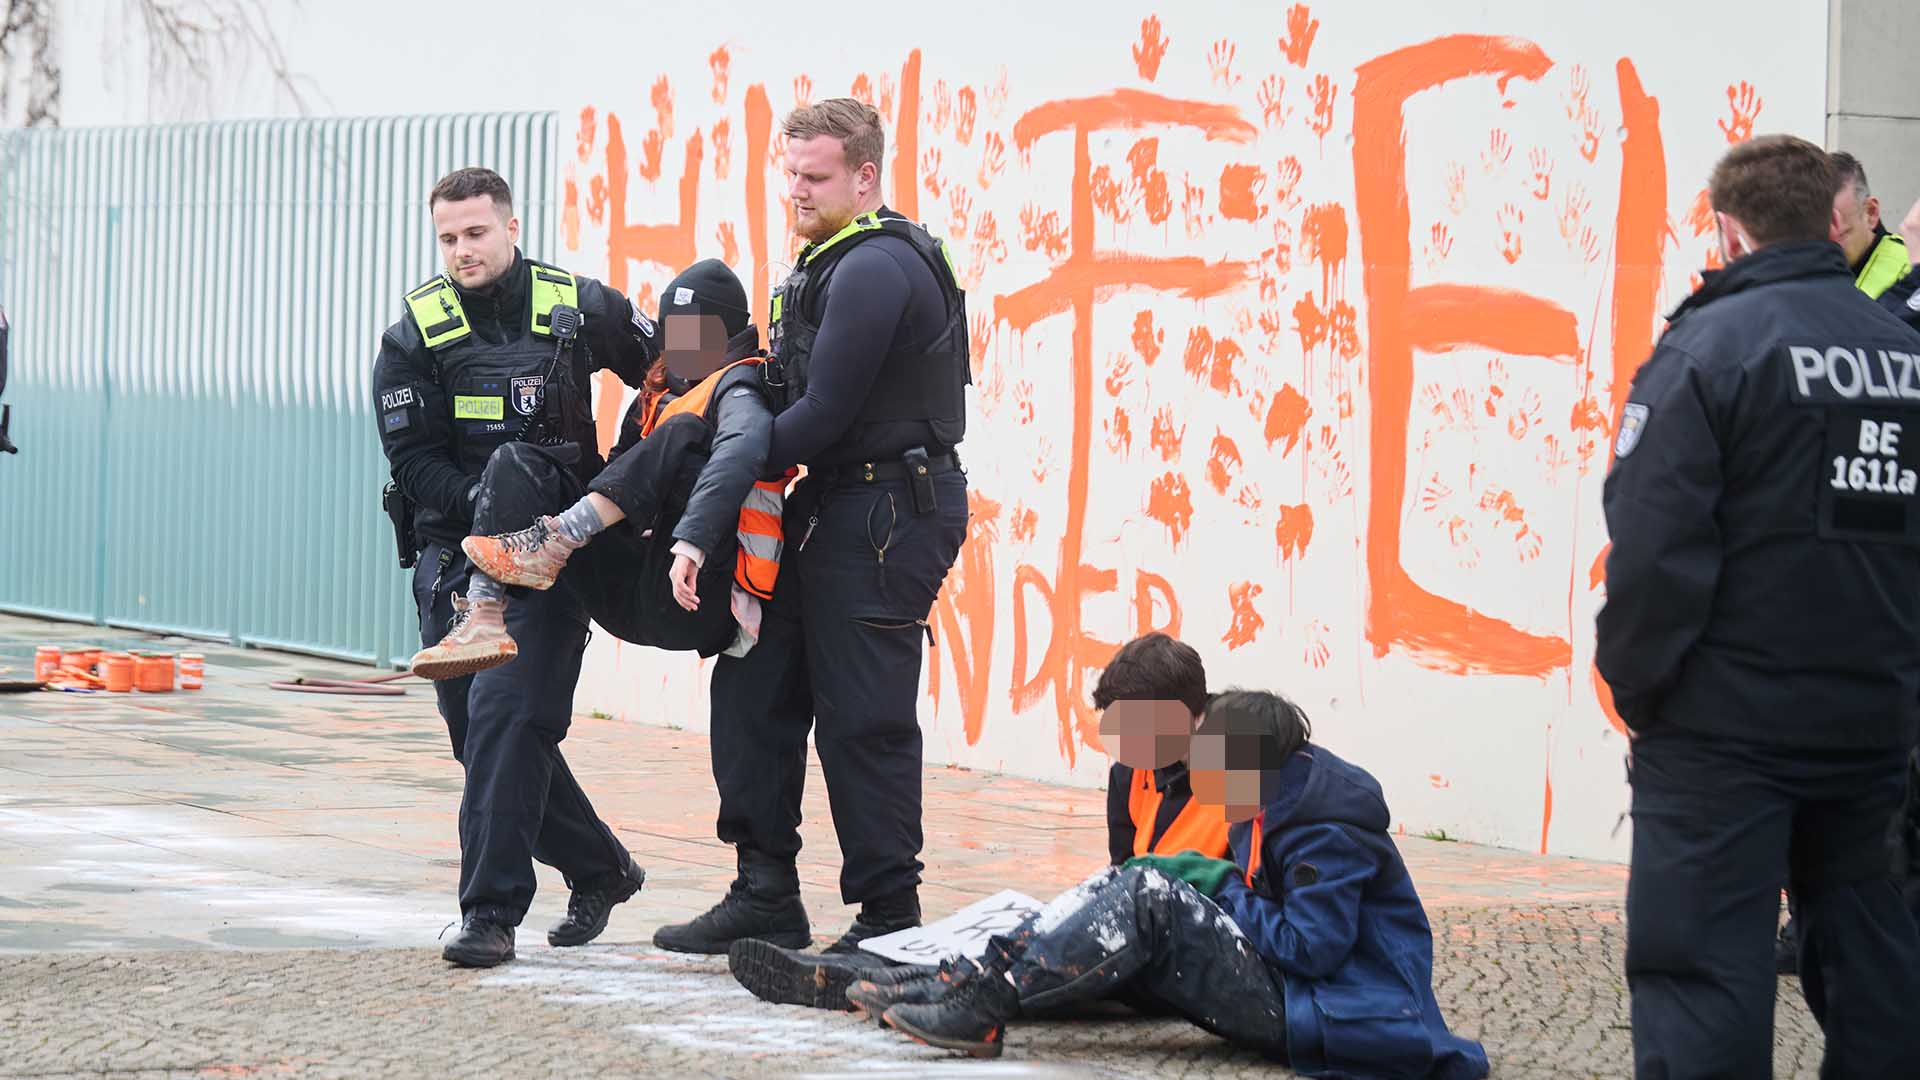 "Hilfe! Eure Kinder" steht mit der Farbe Orange ans Kanzleramt geschmiert, während eine Klimaaktivistin der letzten Generation von Polizisten weggetragen wird. (Quelle: dpa/Riedl)